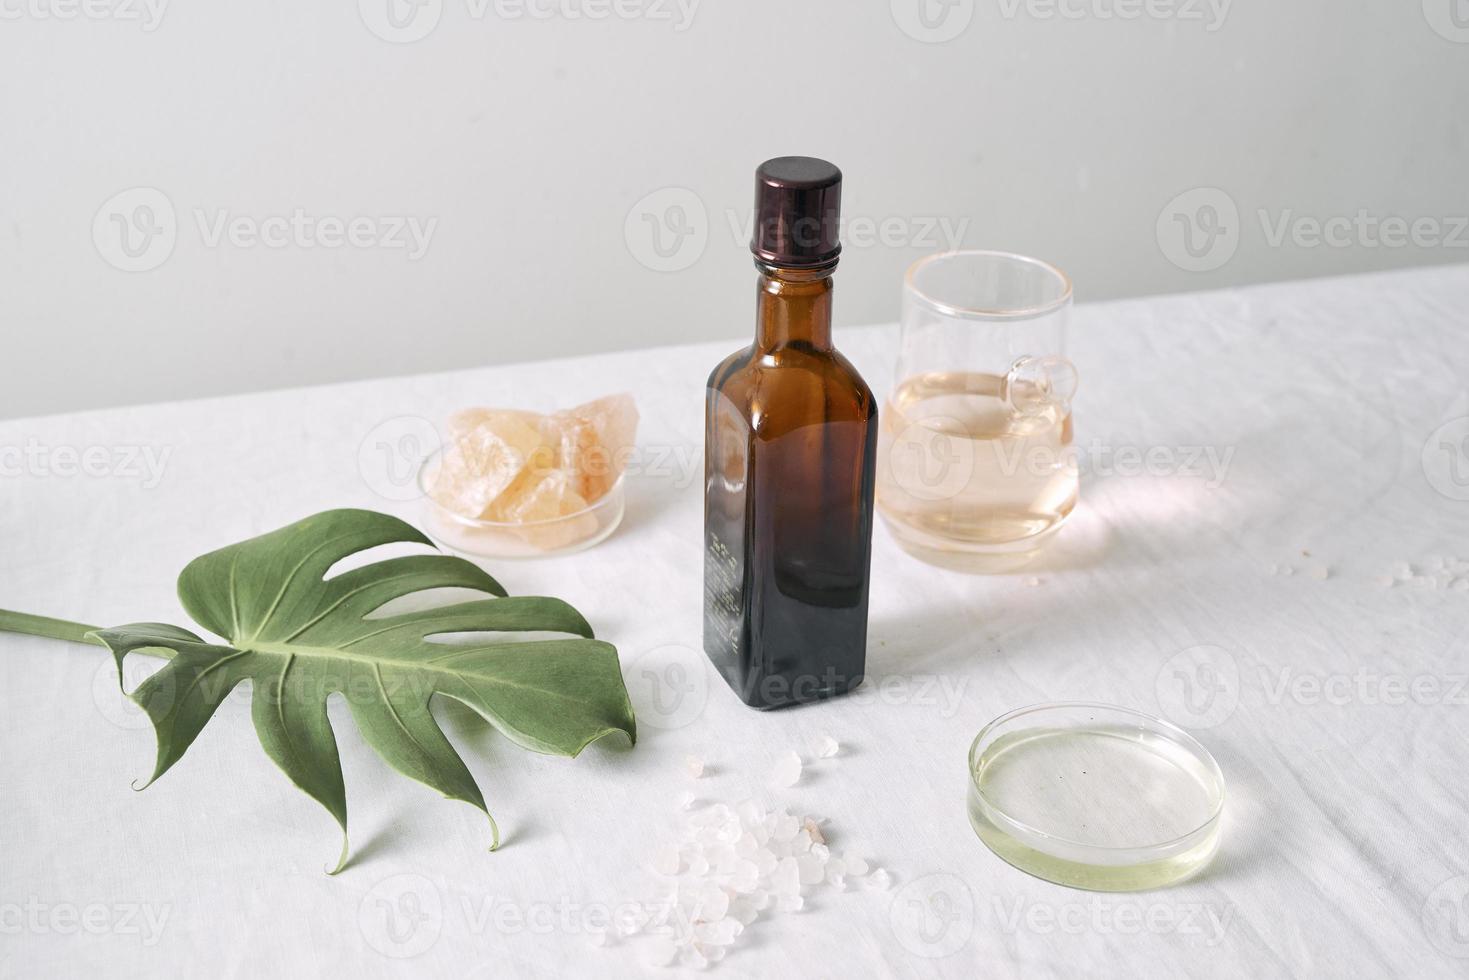 kunstmatig natuur huidsverzorging en essentieel olie aromatherapie .biologisch natuurlijk wetenschap schoonheid Product .kruiden alternatief geneeskunde . bespotten omhoog. foto